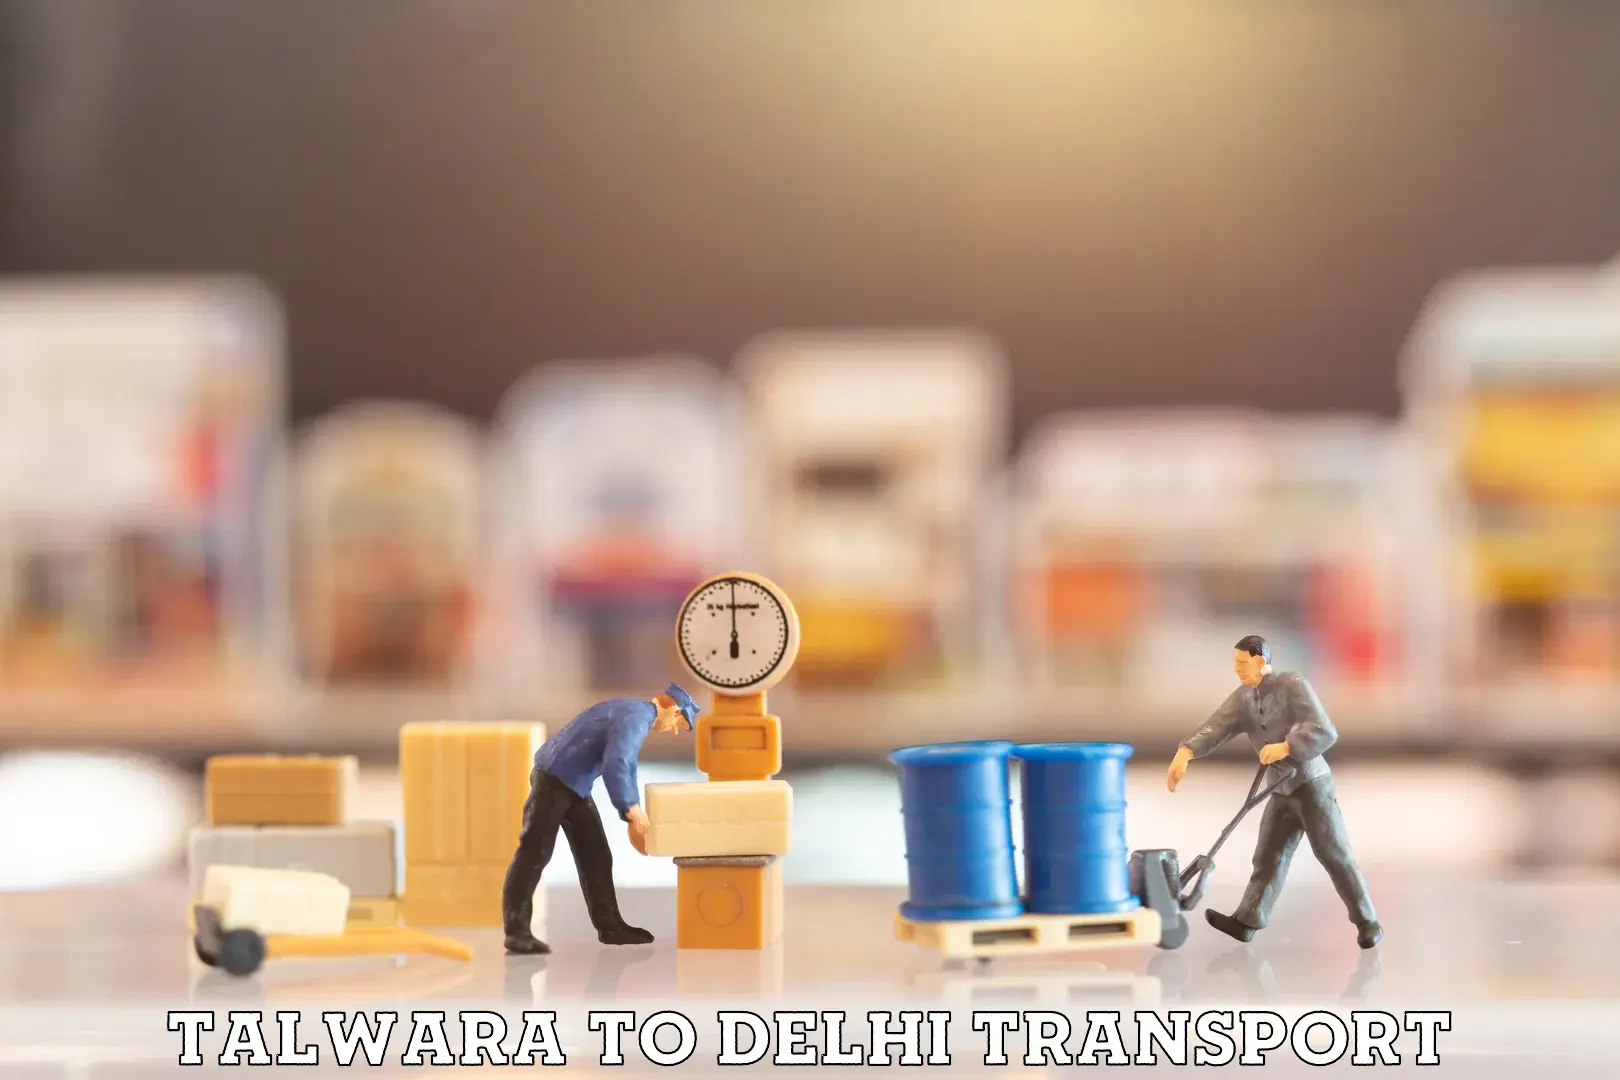 Delivery service Talwara to Delhi